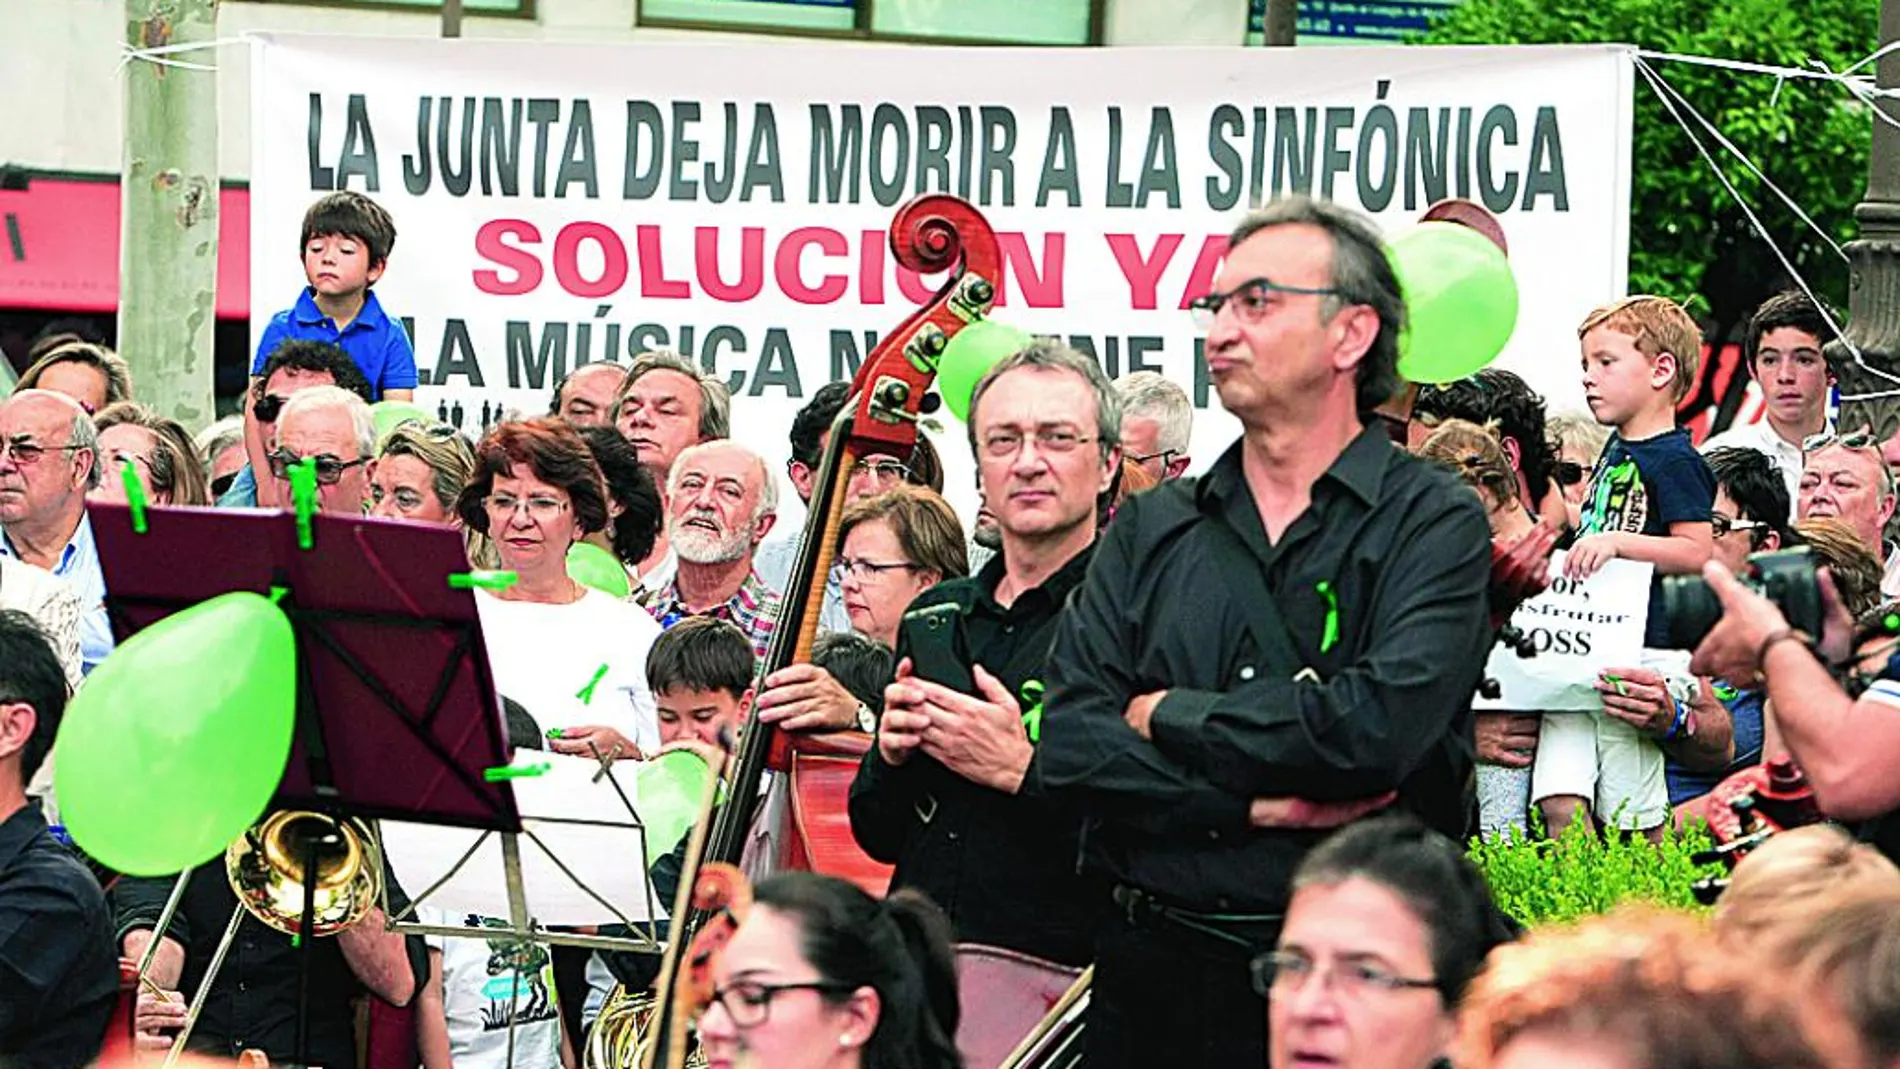 Los músicos han contado con el respaldo popular en sus múltiples actos de protesta